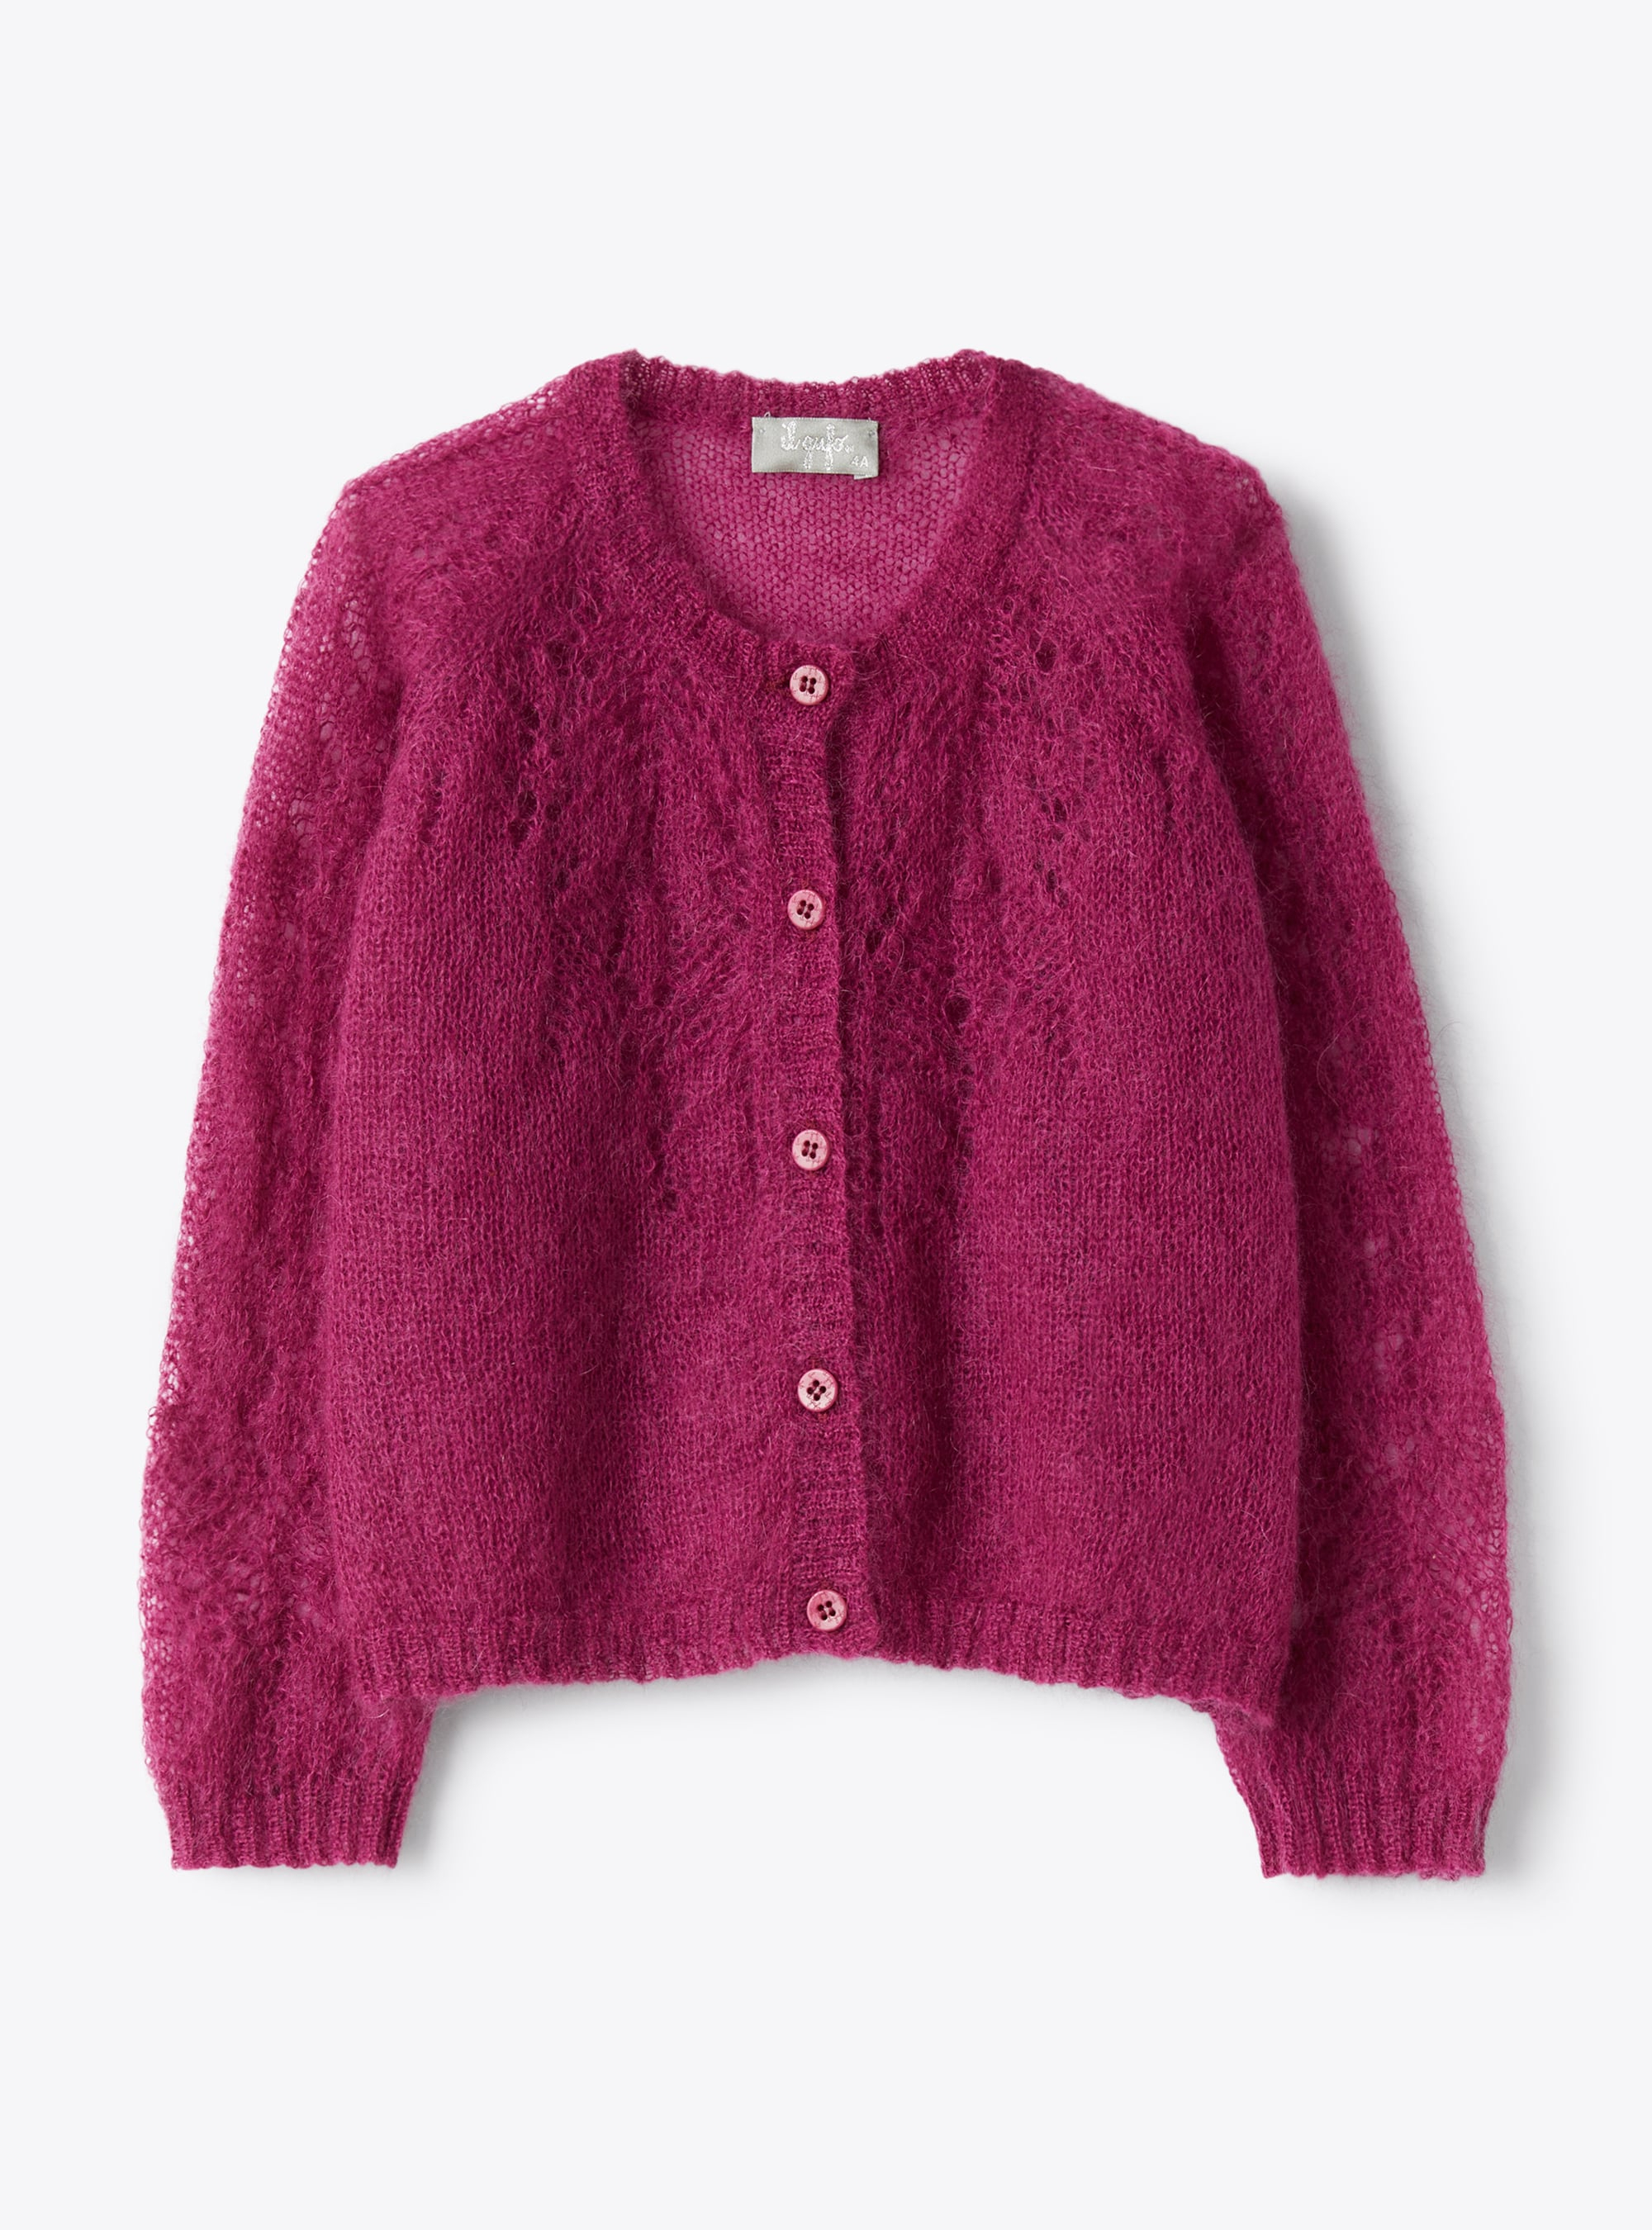 Cardigan in fuchsia-pink kid mohair - Sweaters - Il Gufo